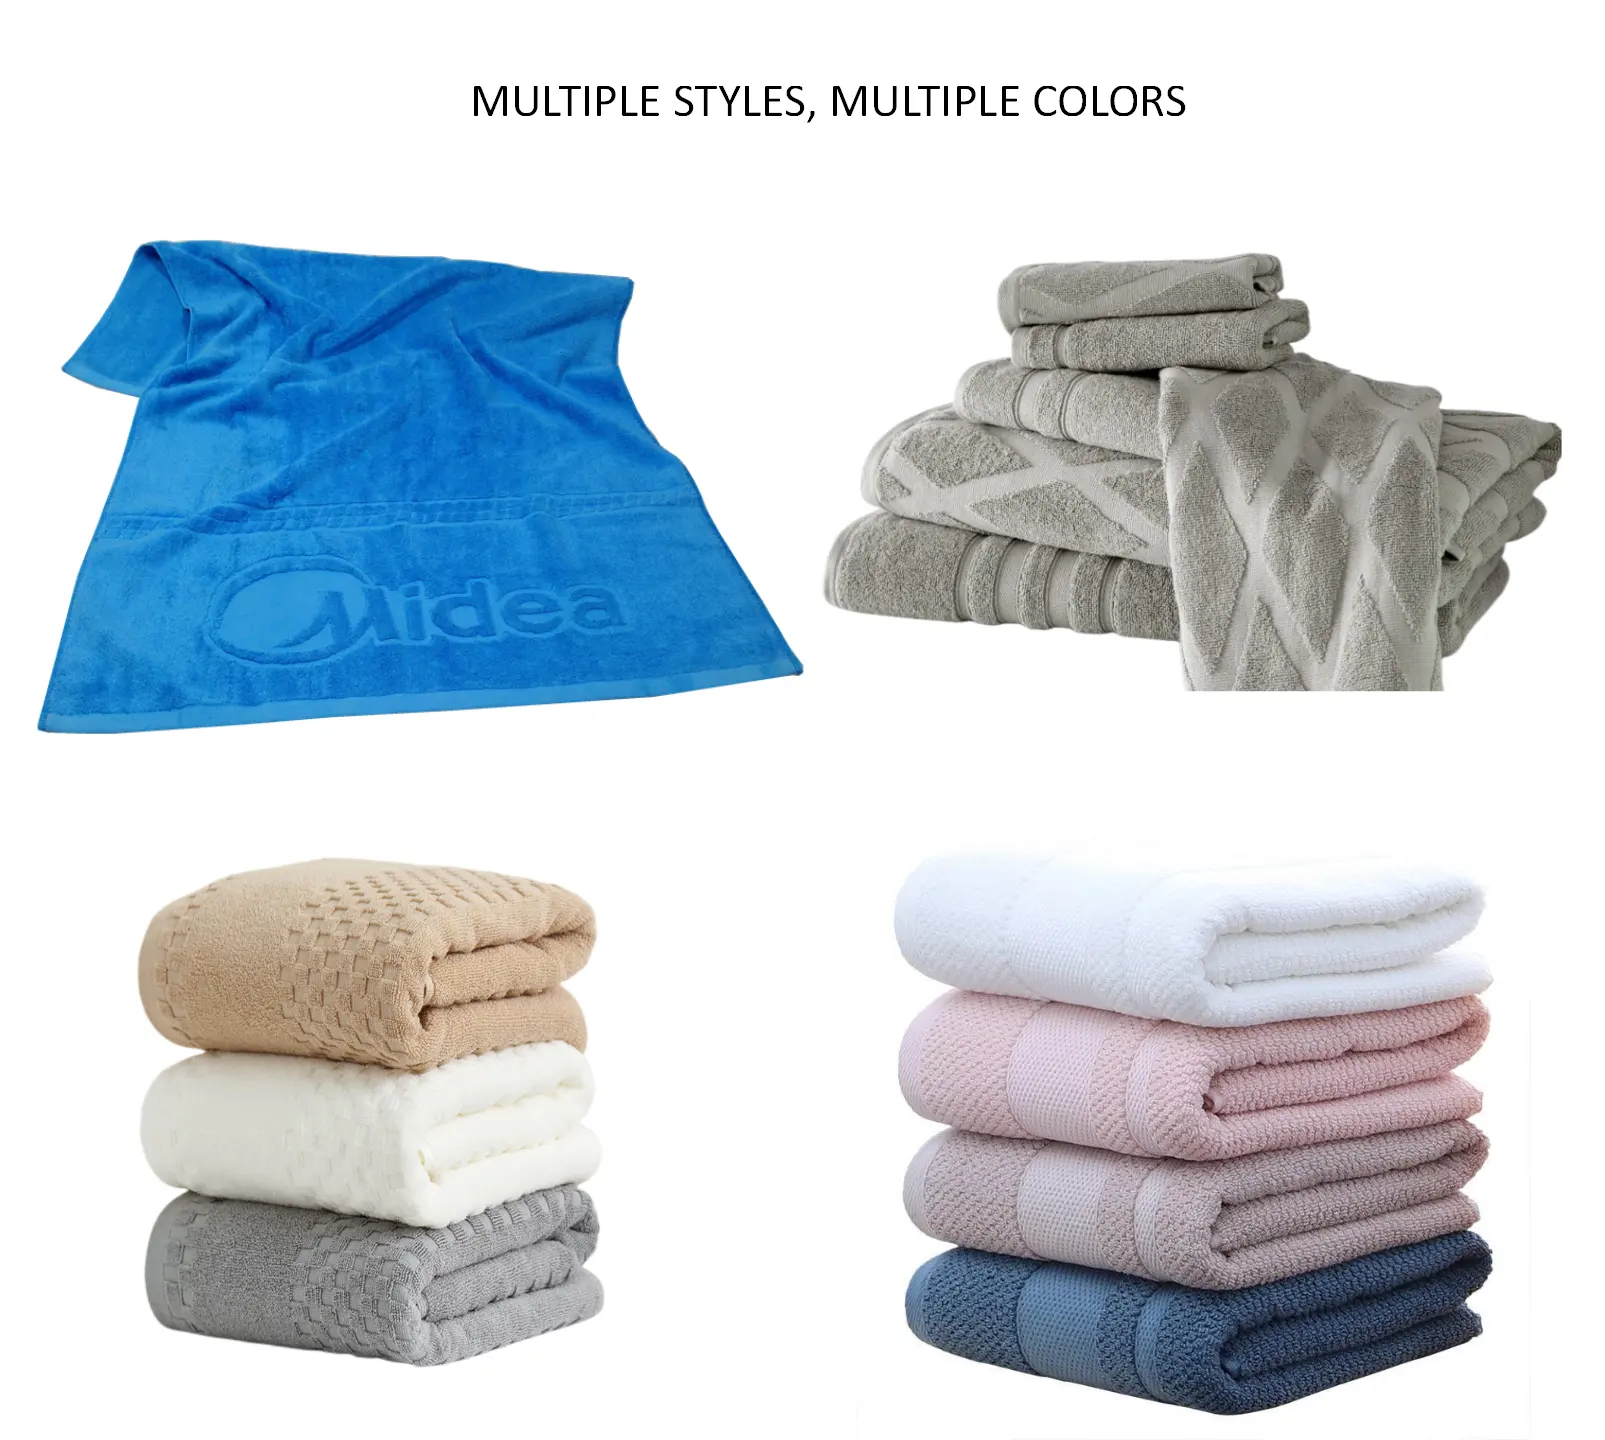 Kunden spezifische Farbe 100% Baumwolle Jacquard Strand tuch benutzer definierte geprägte Logo Badet ücher